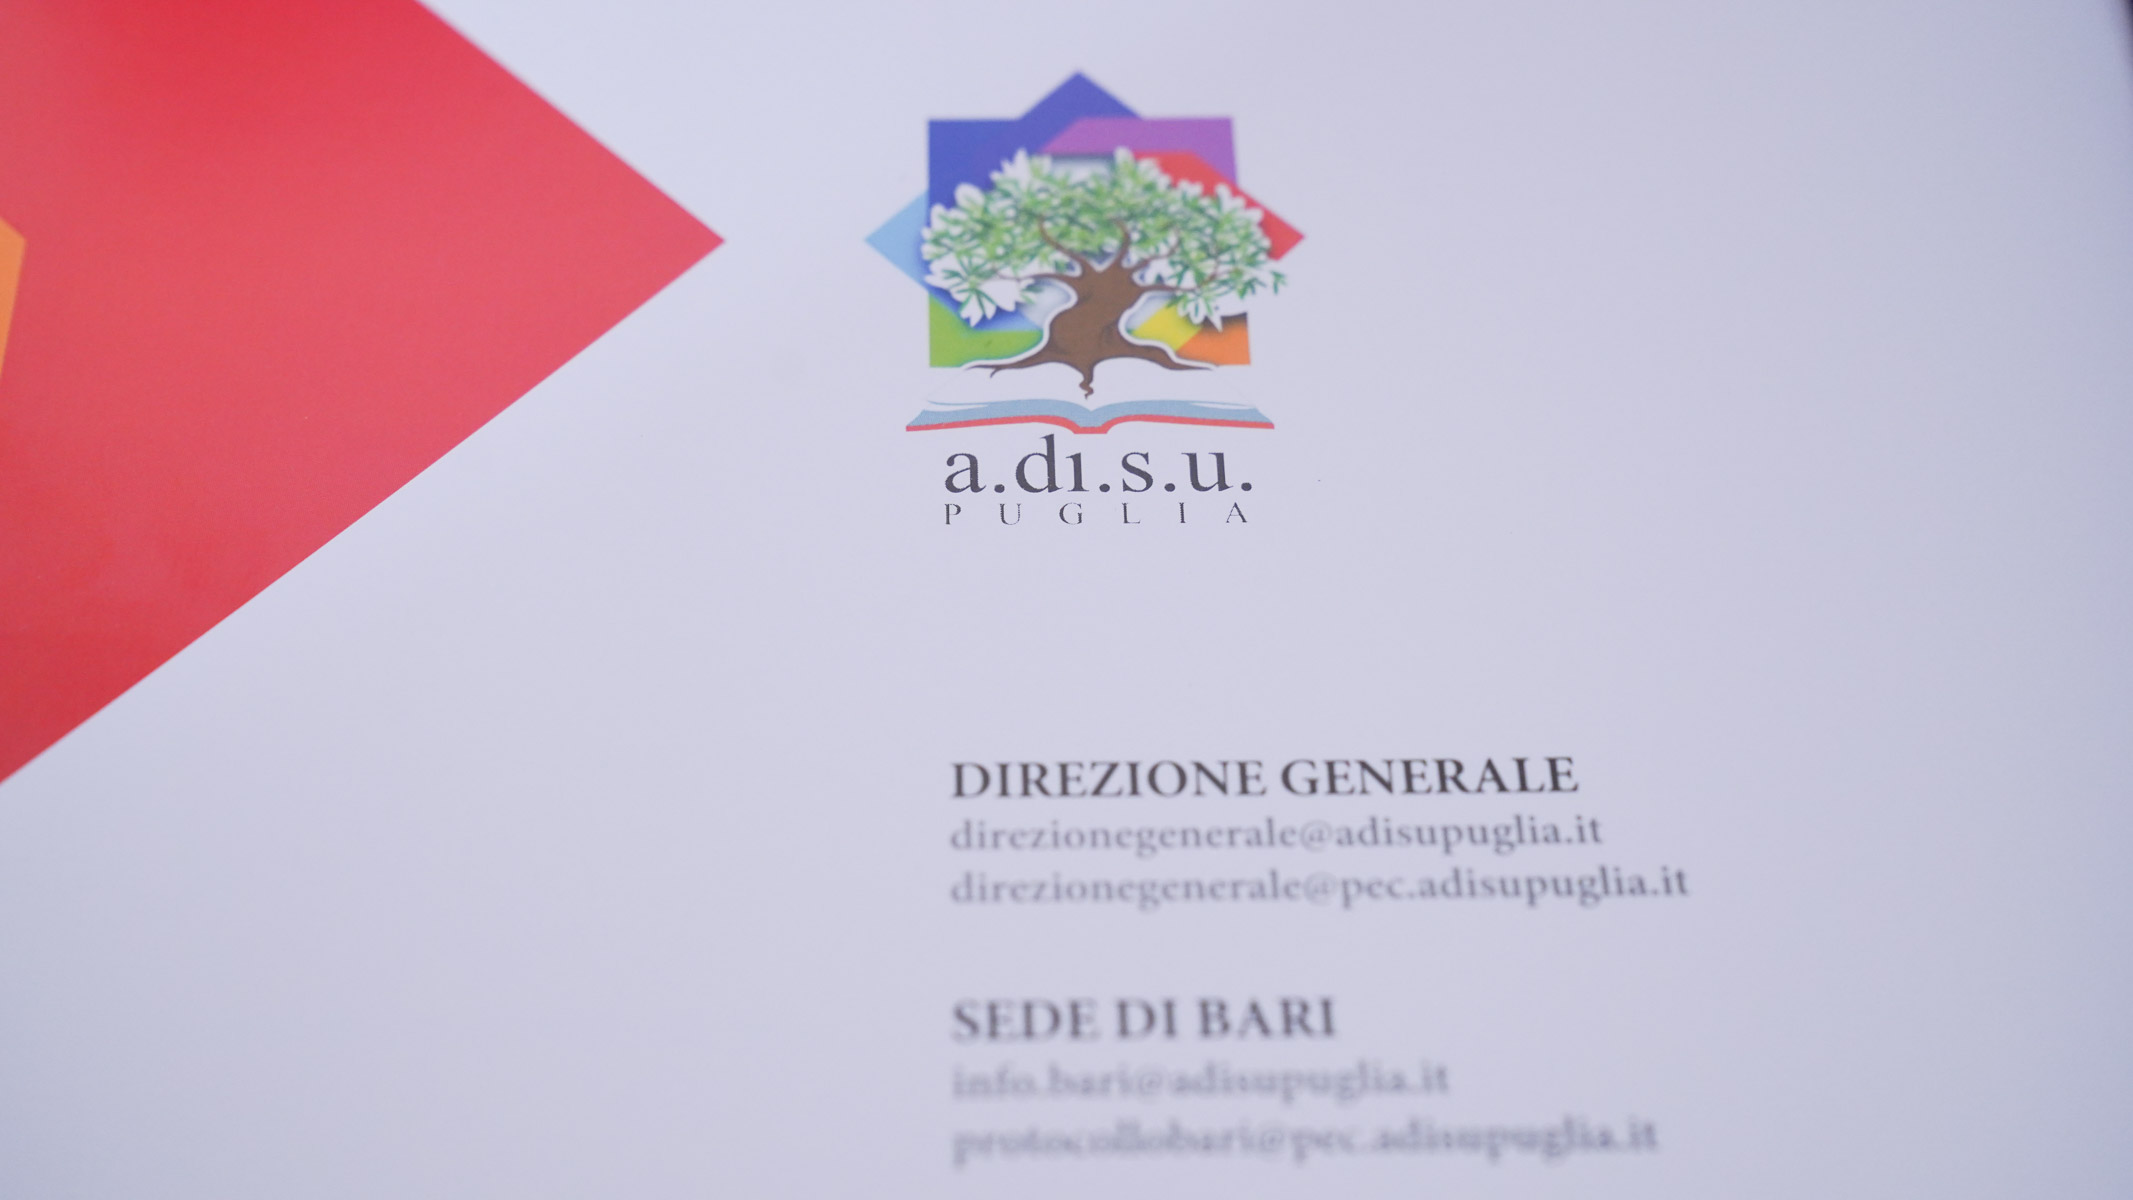 Galleria L’assessore Leo “Il presente e il futuro del diritto allo studio per una Puglia Regione Universitaria” - Diapositiva 1 di 13